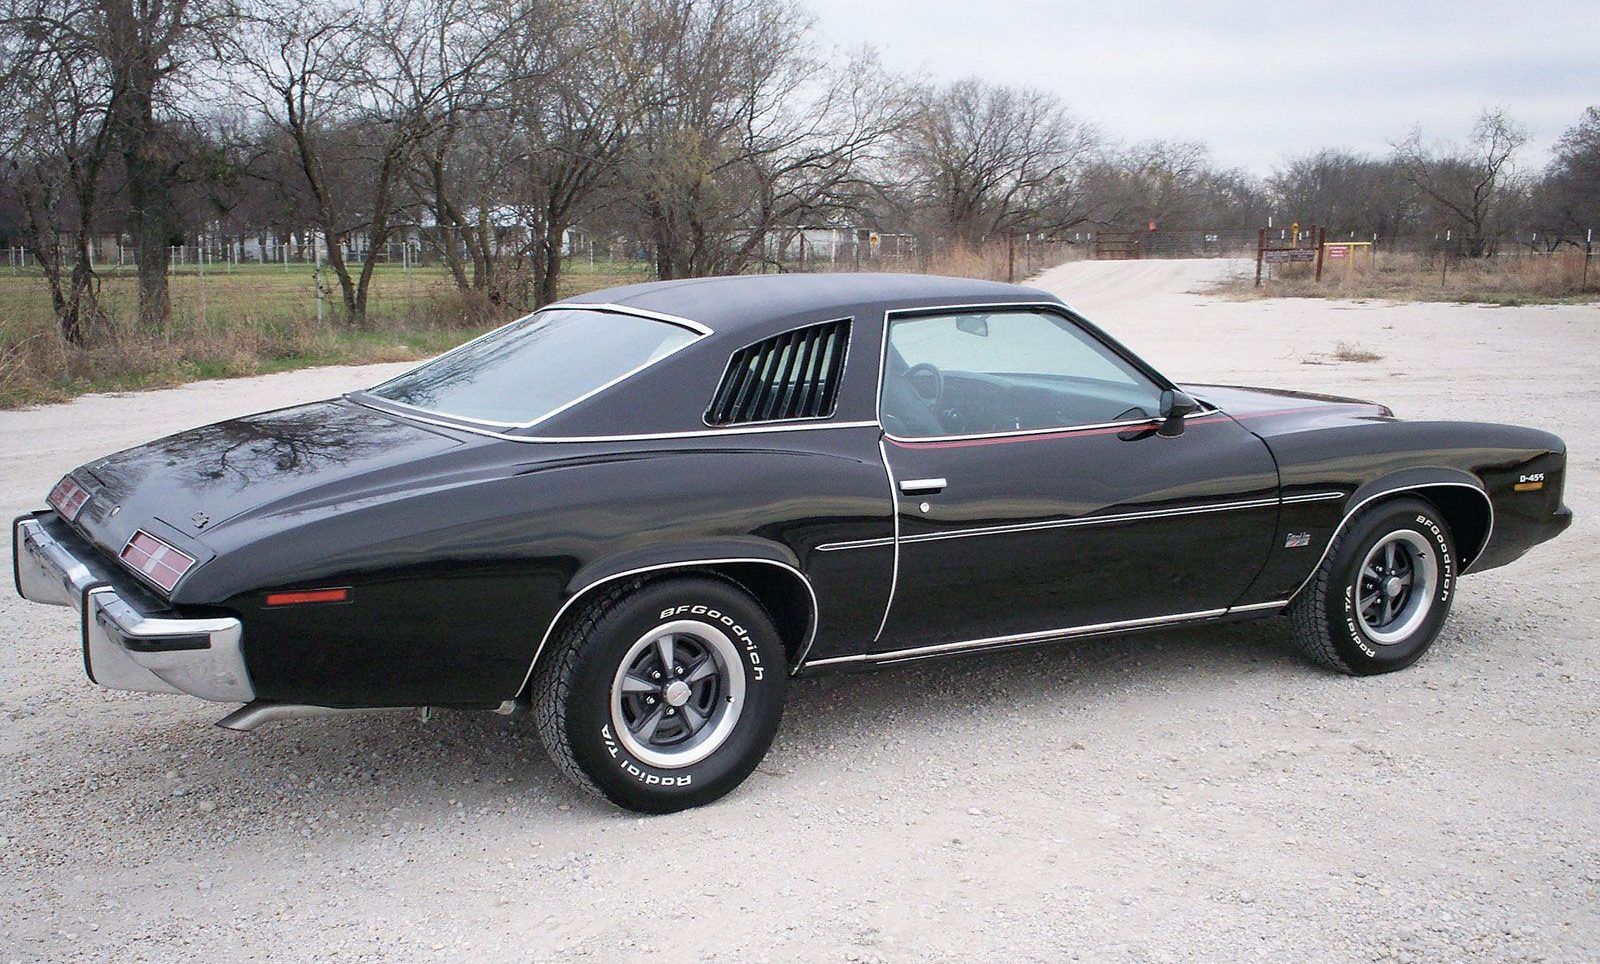 Black 1973 Pontiac Grand Am parked